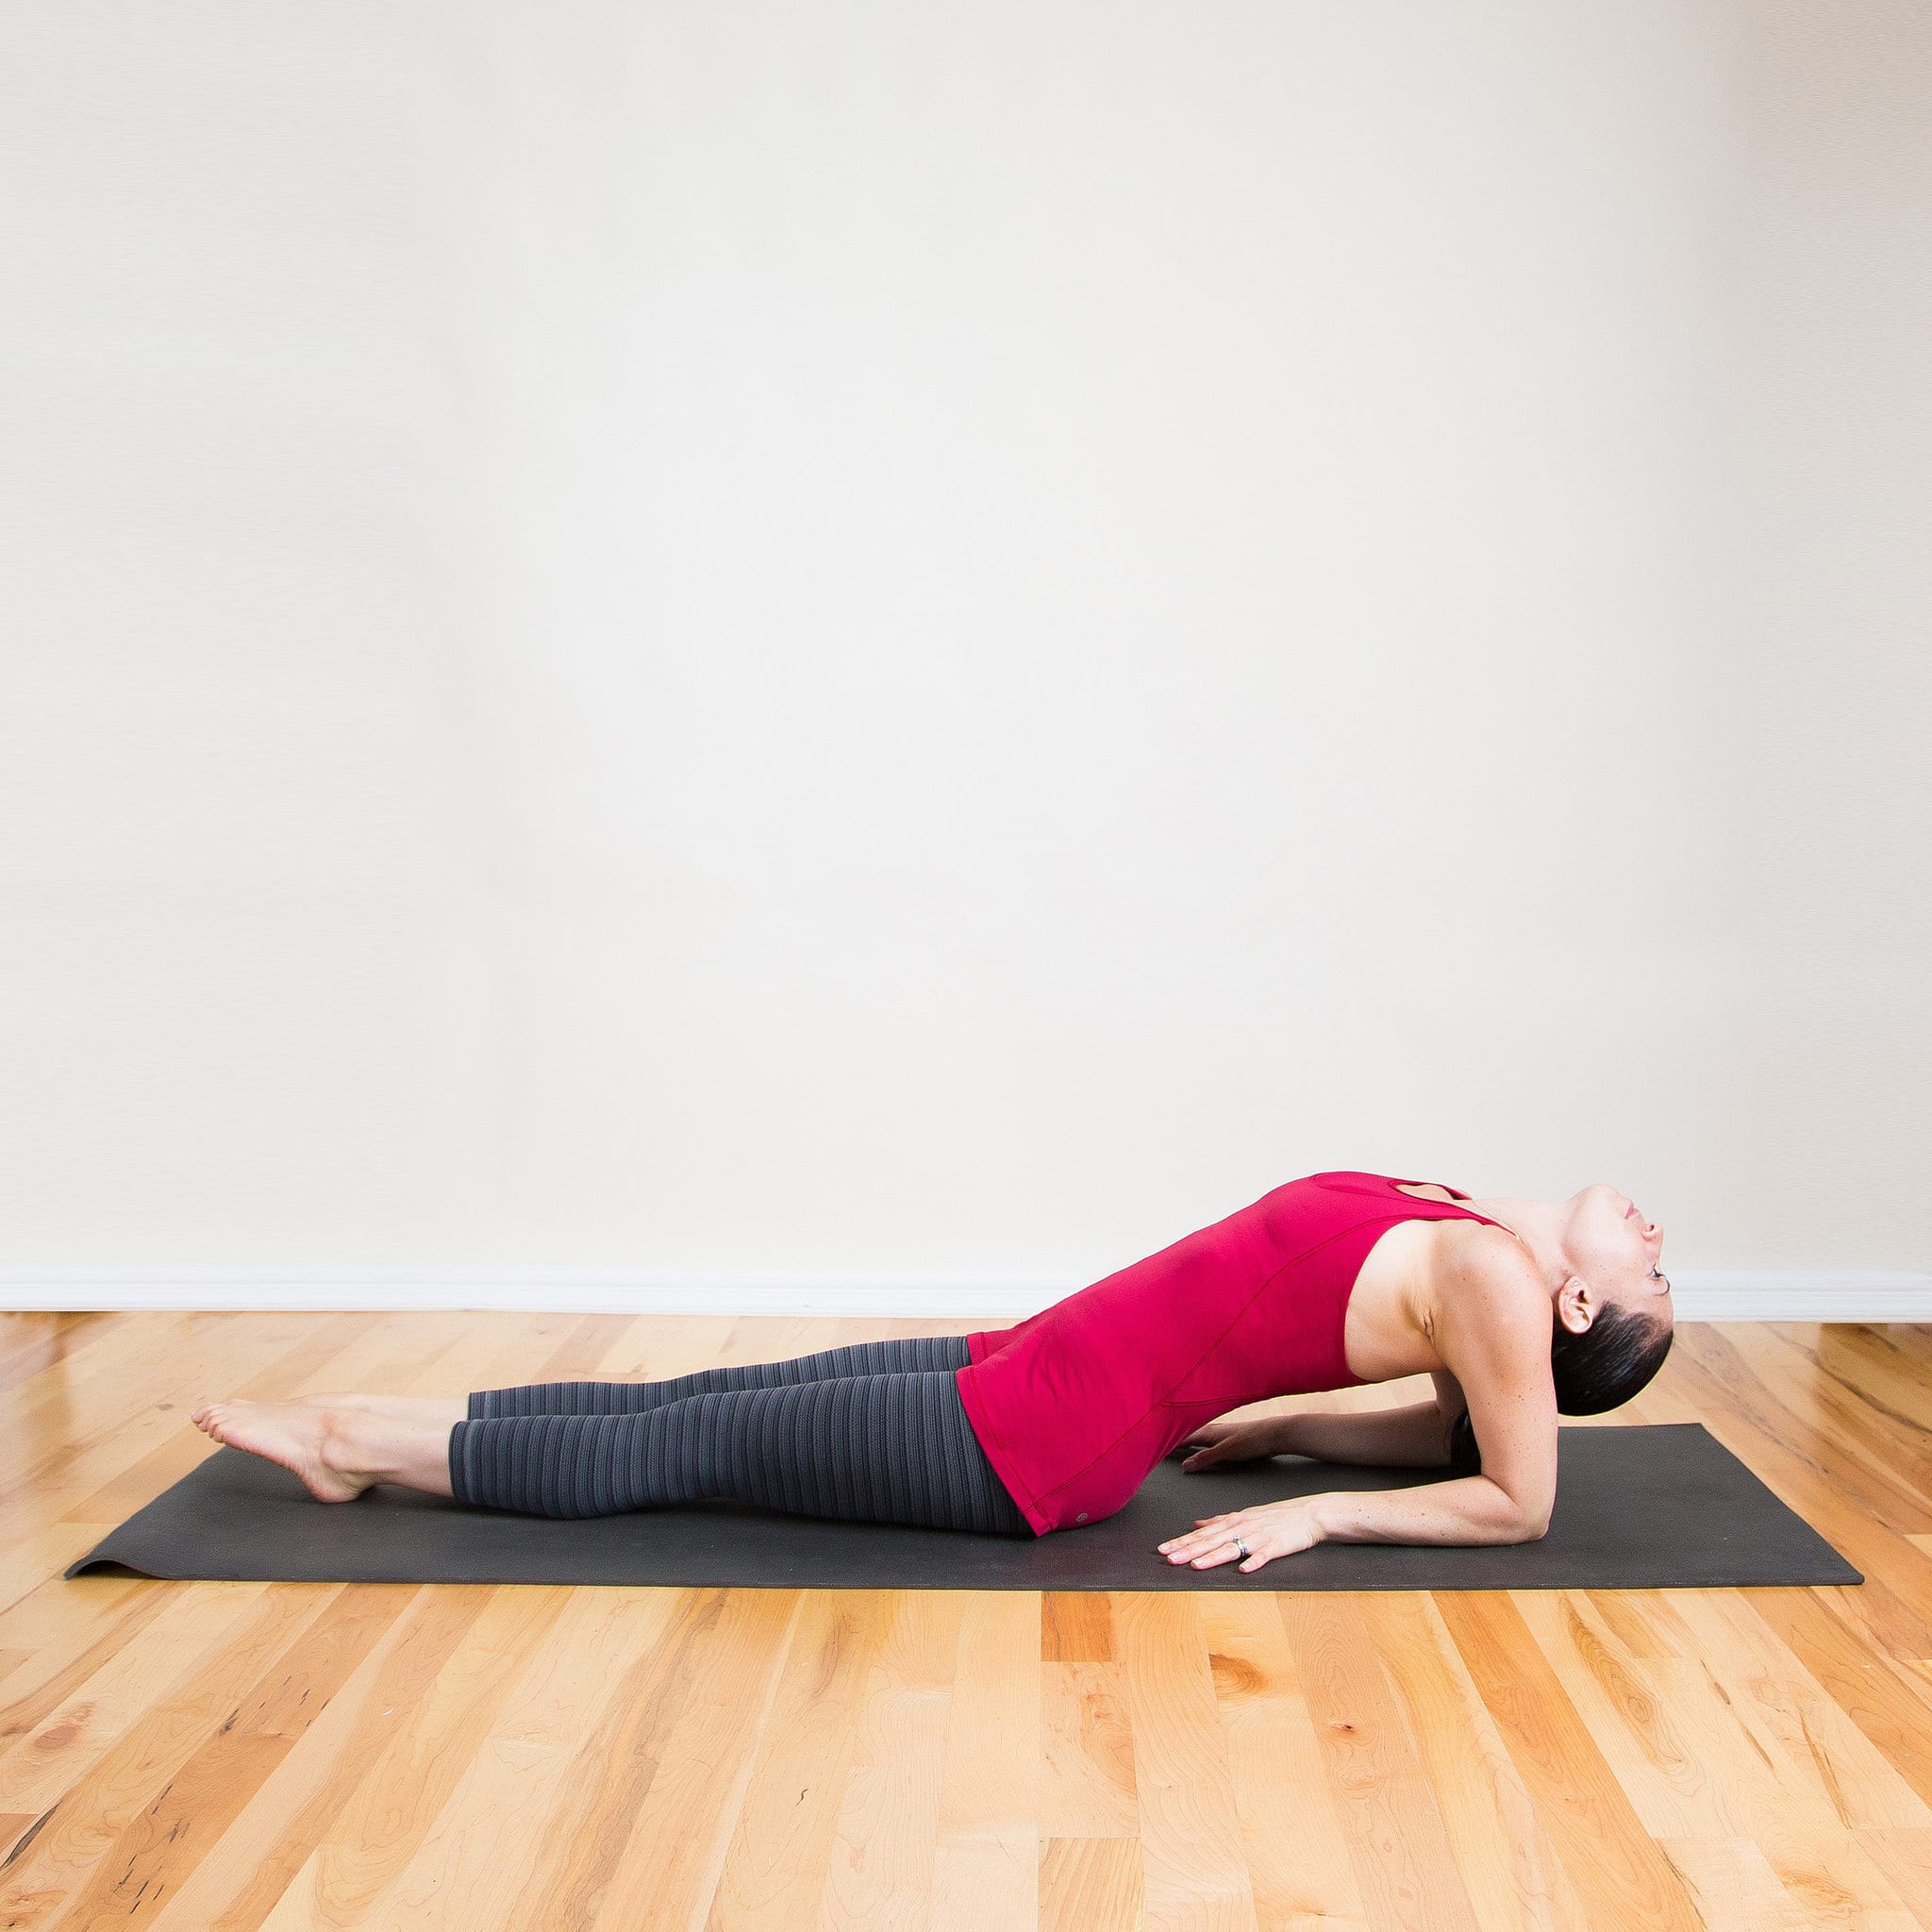 Great stretching. Растяжка спины на коврике. Стретчинг для спины. Скрутки в йоге.